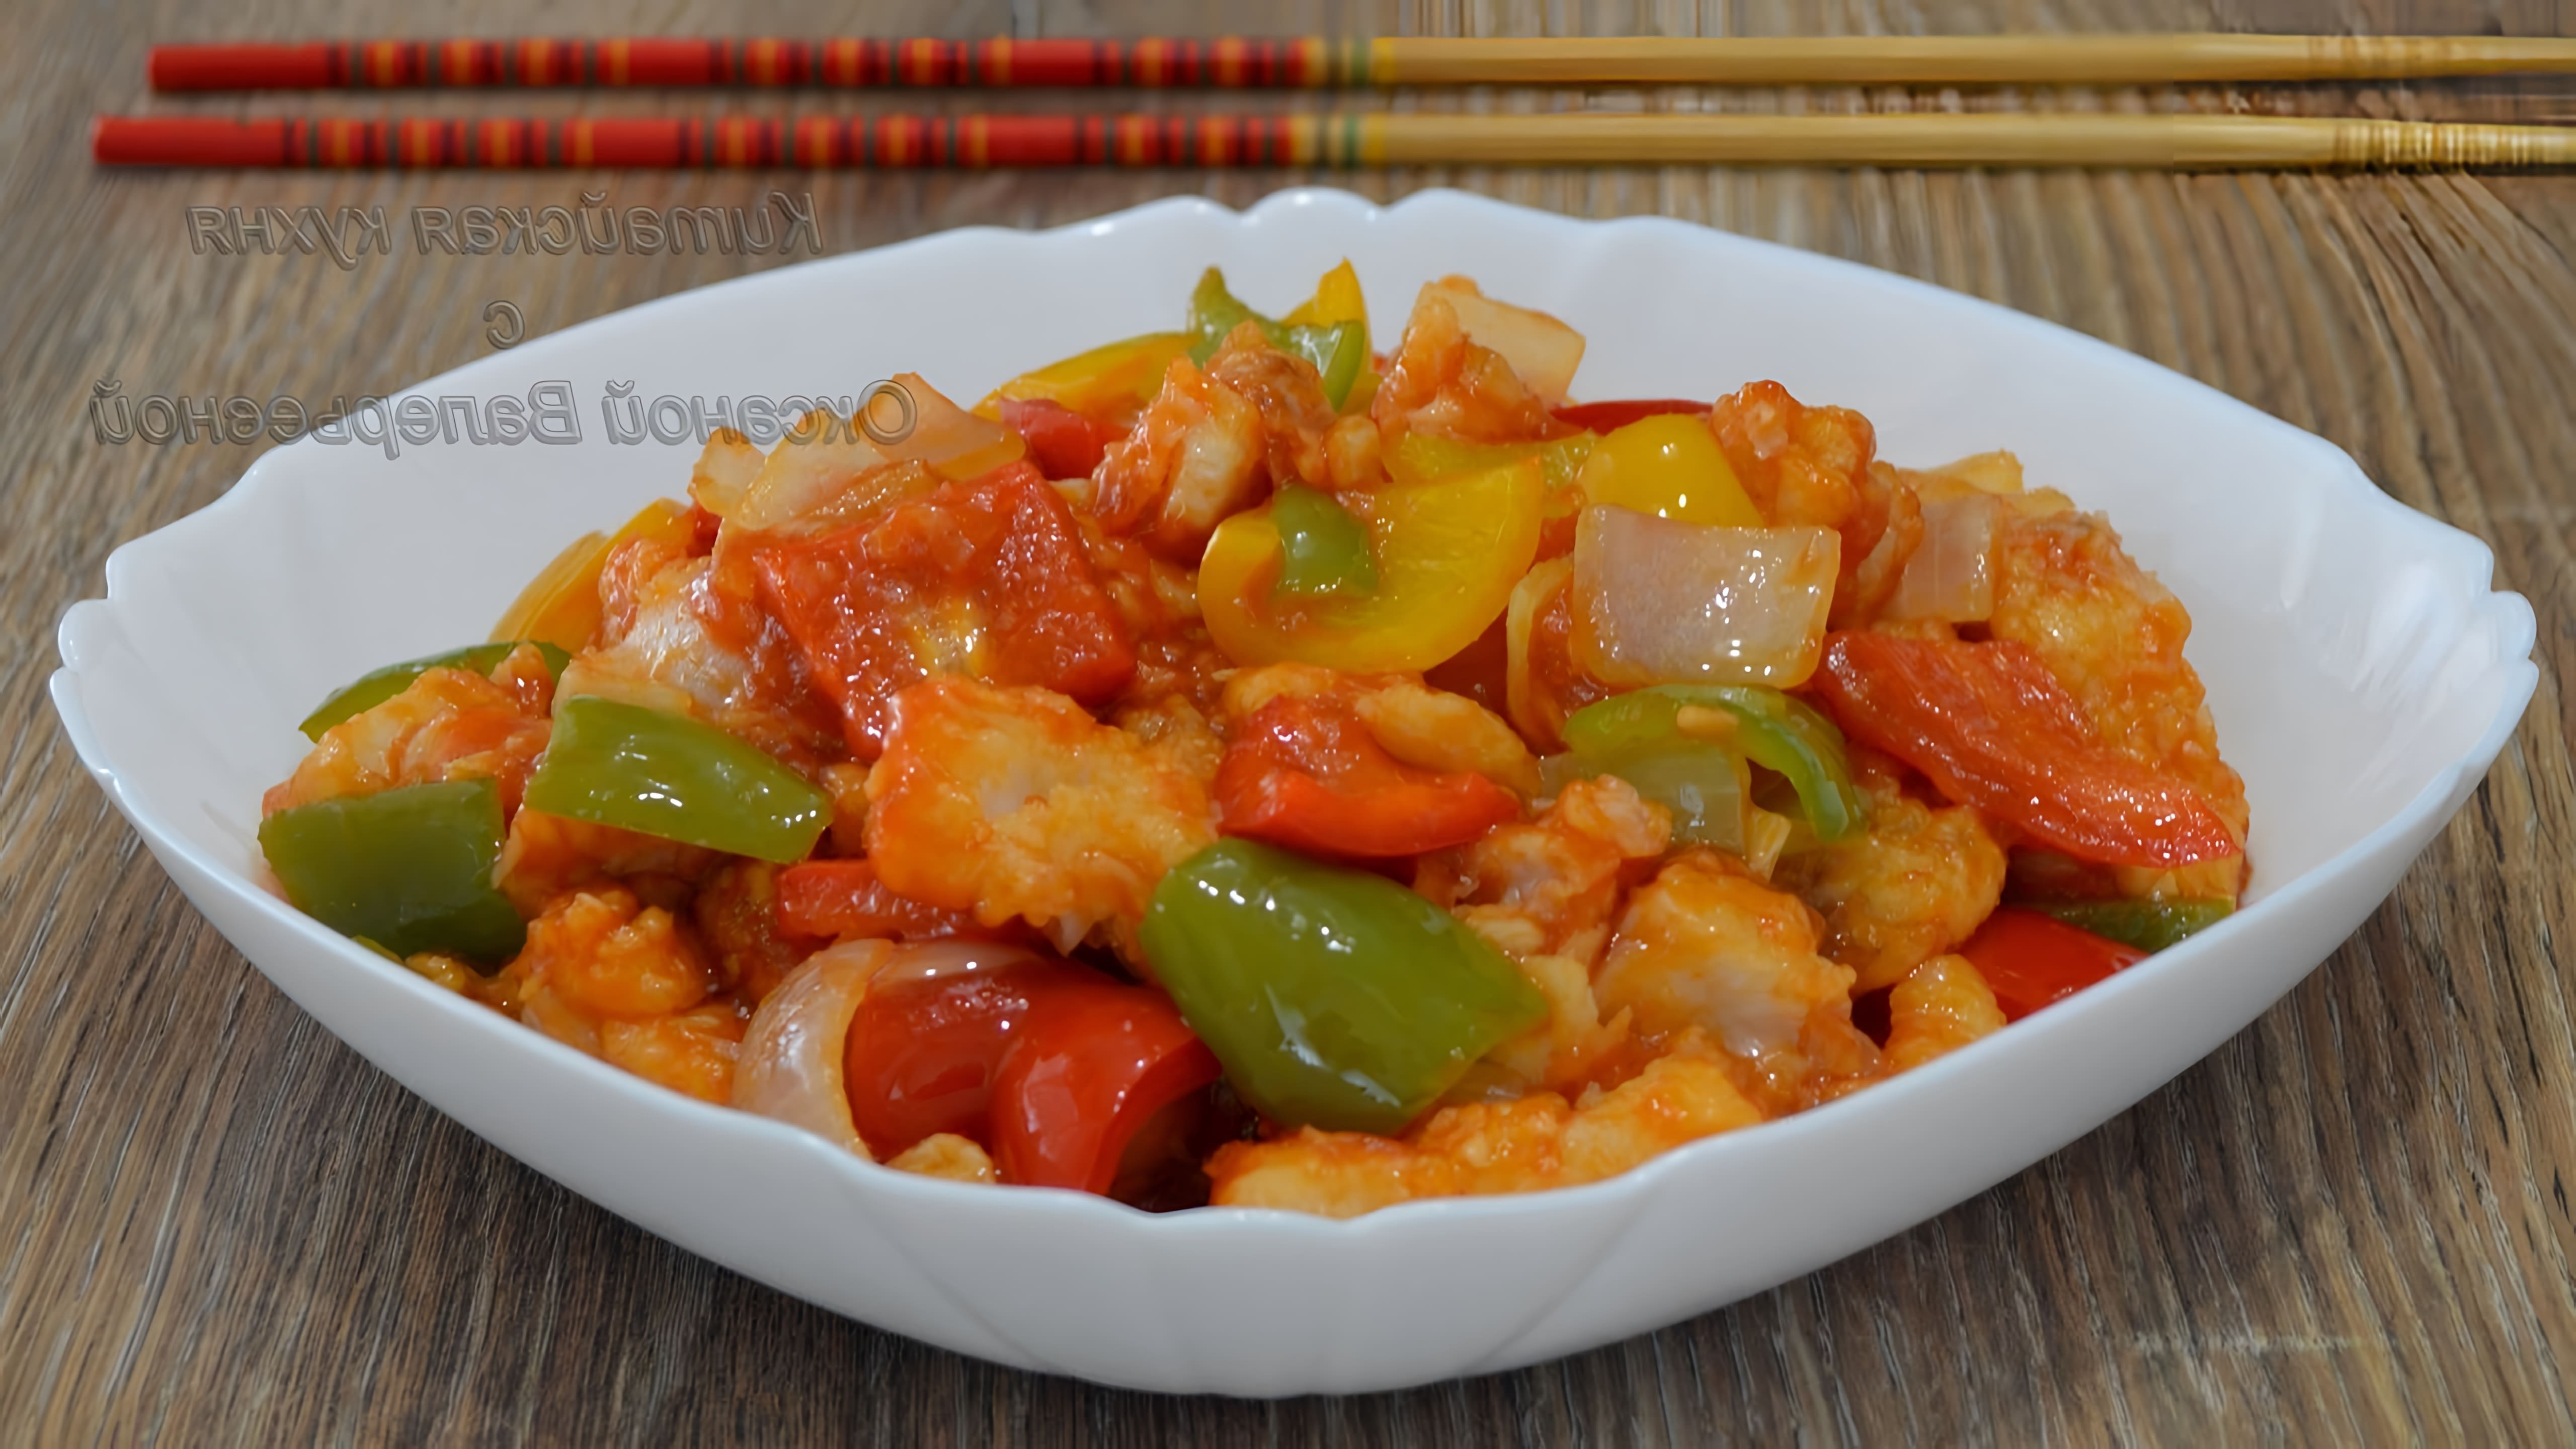 В этом видео демонстрируется процесс приготовления популярного блюда китайской кухни - филе рыбы в кисло-сладком соусе